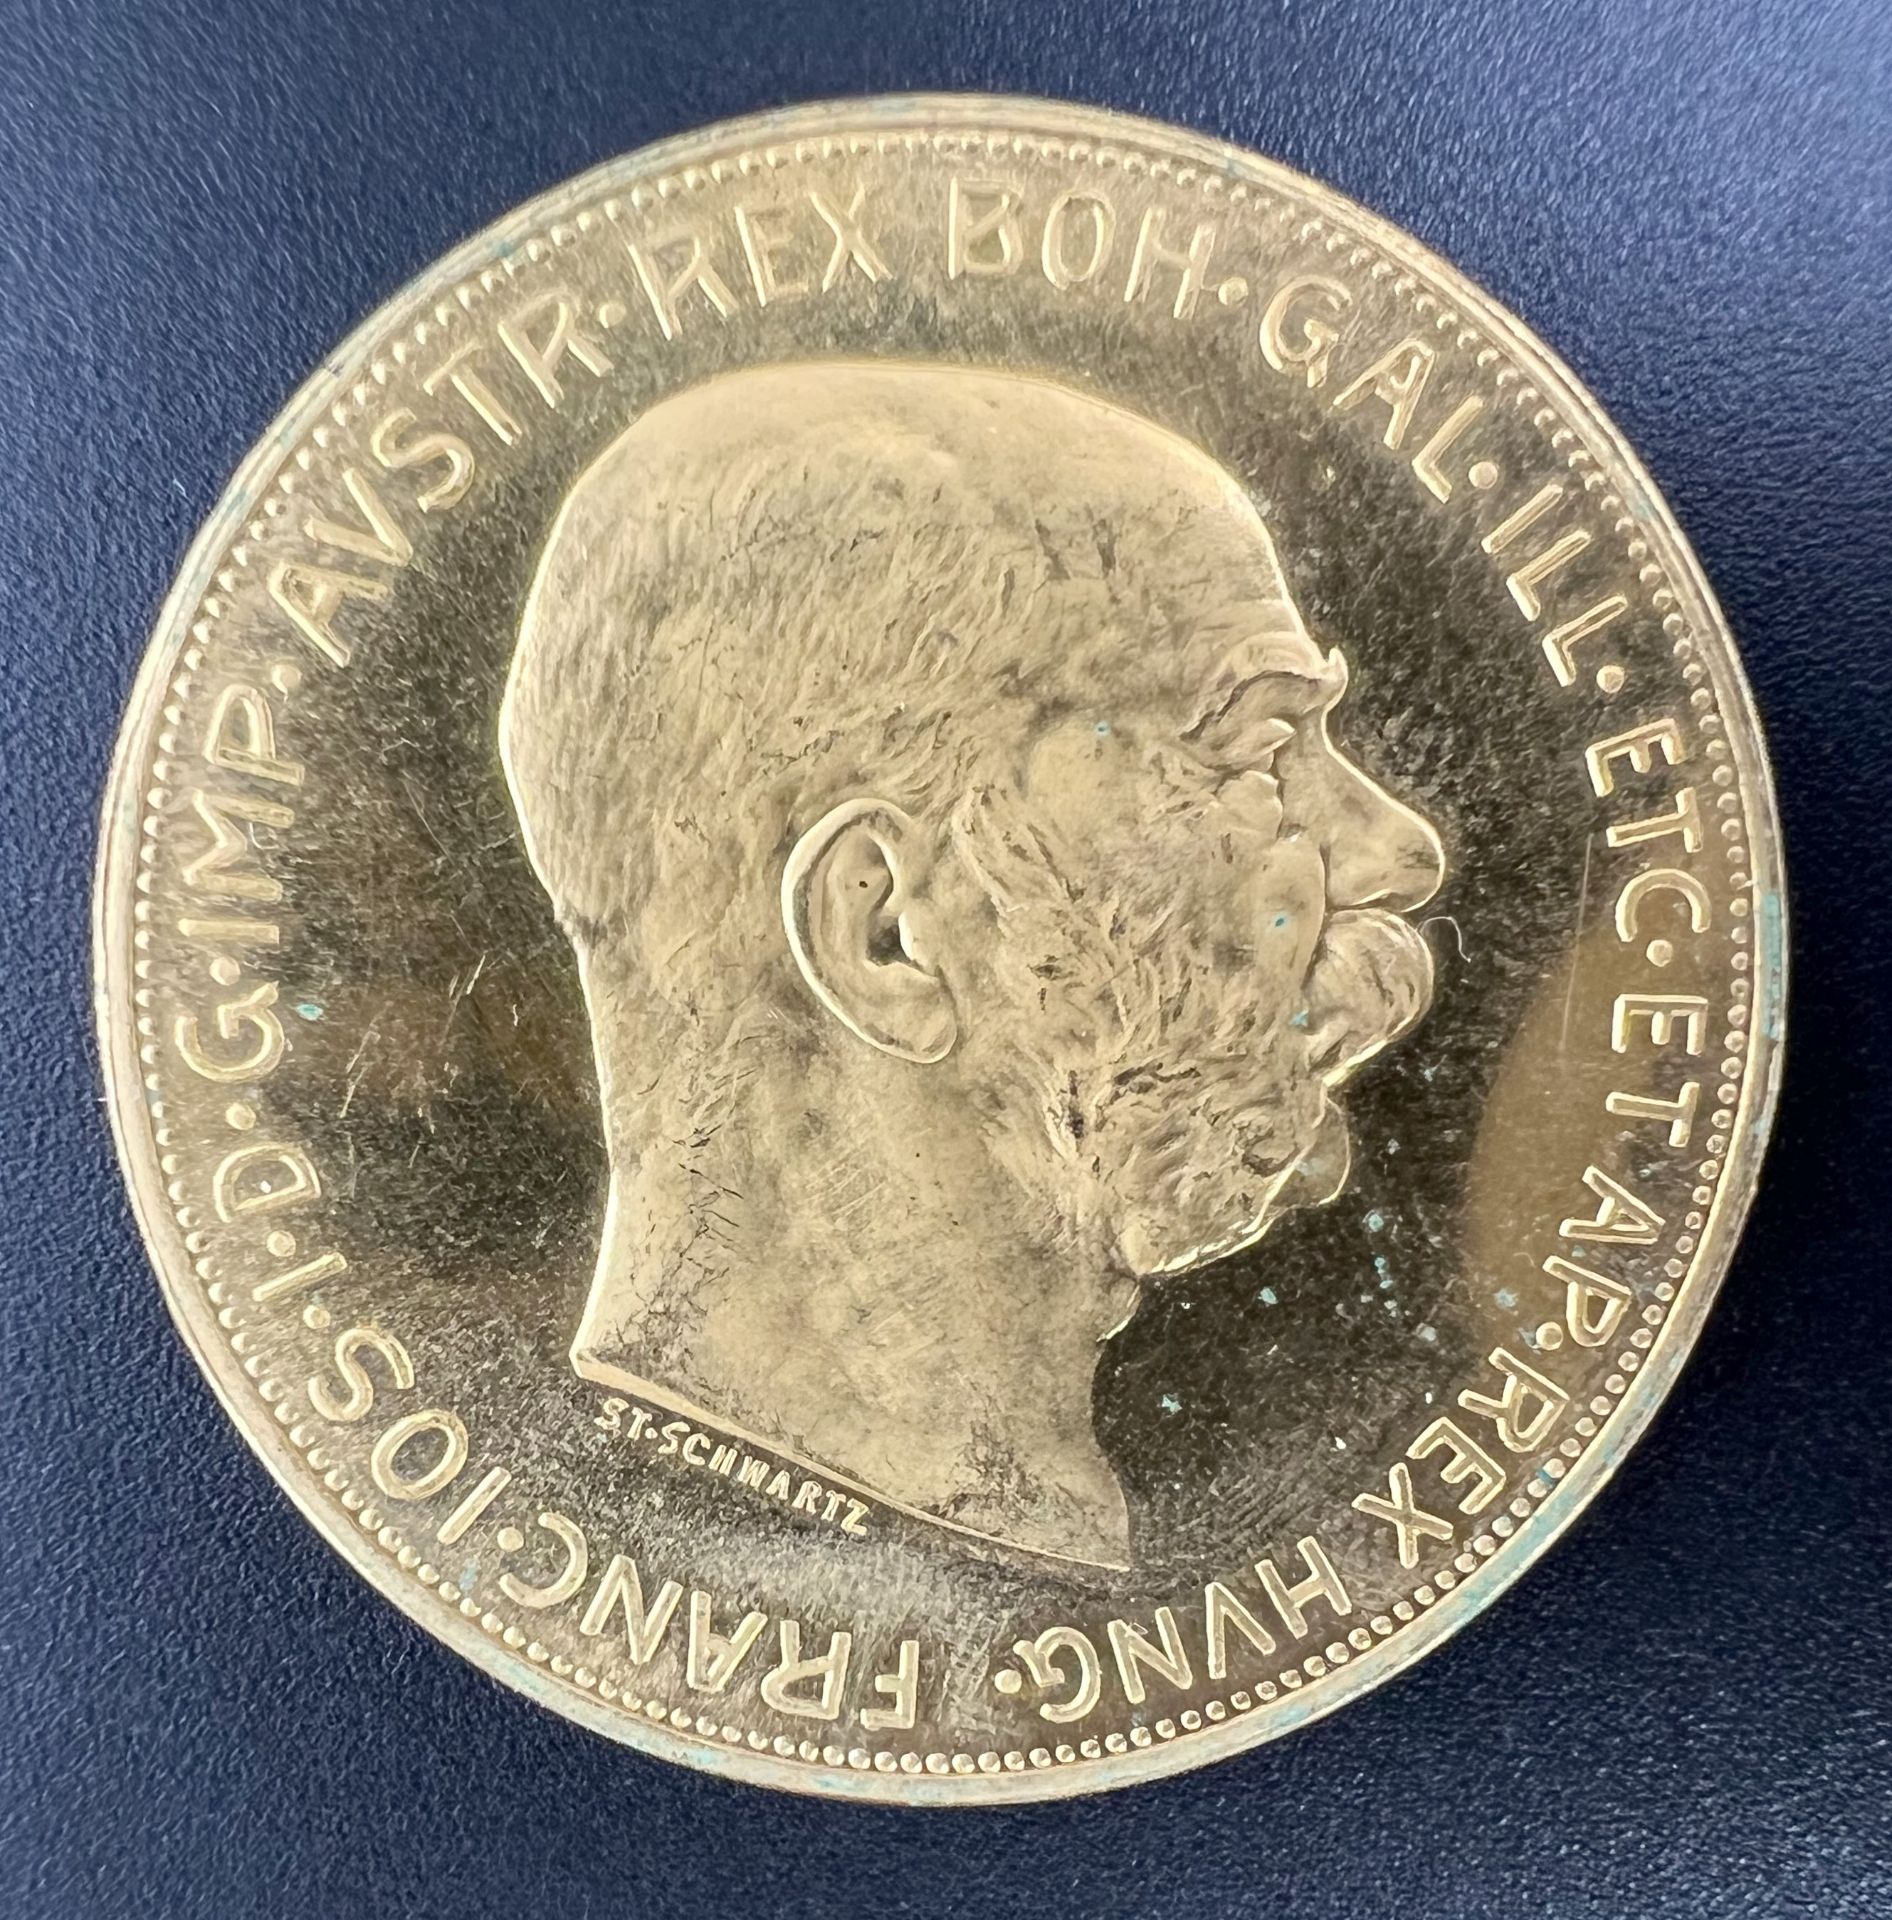 Goldmünze 100 Kronen "Franz Joseph I.". Österreich 1915. 900 Gold.